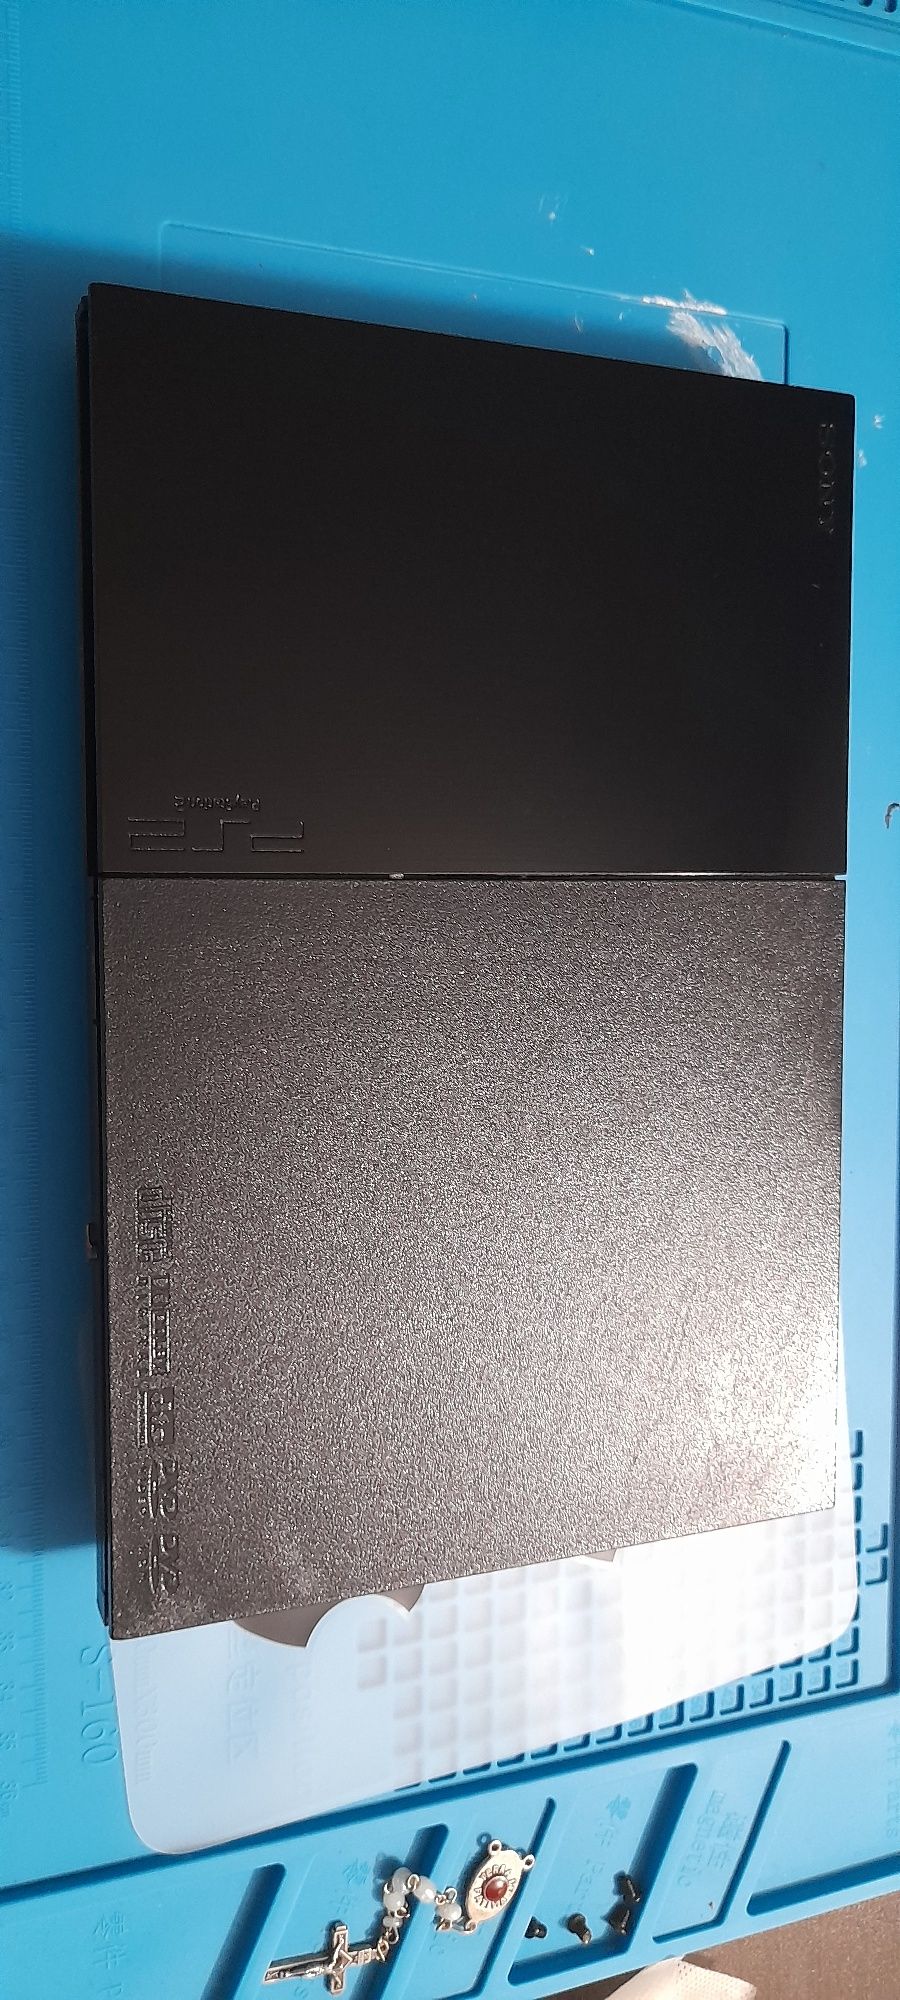 Ps2 slim black + caixa original